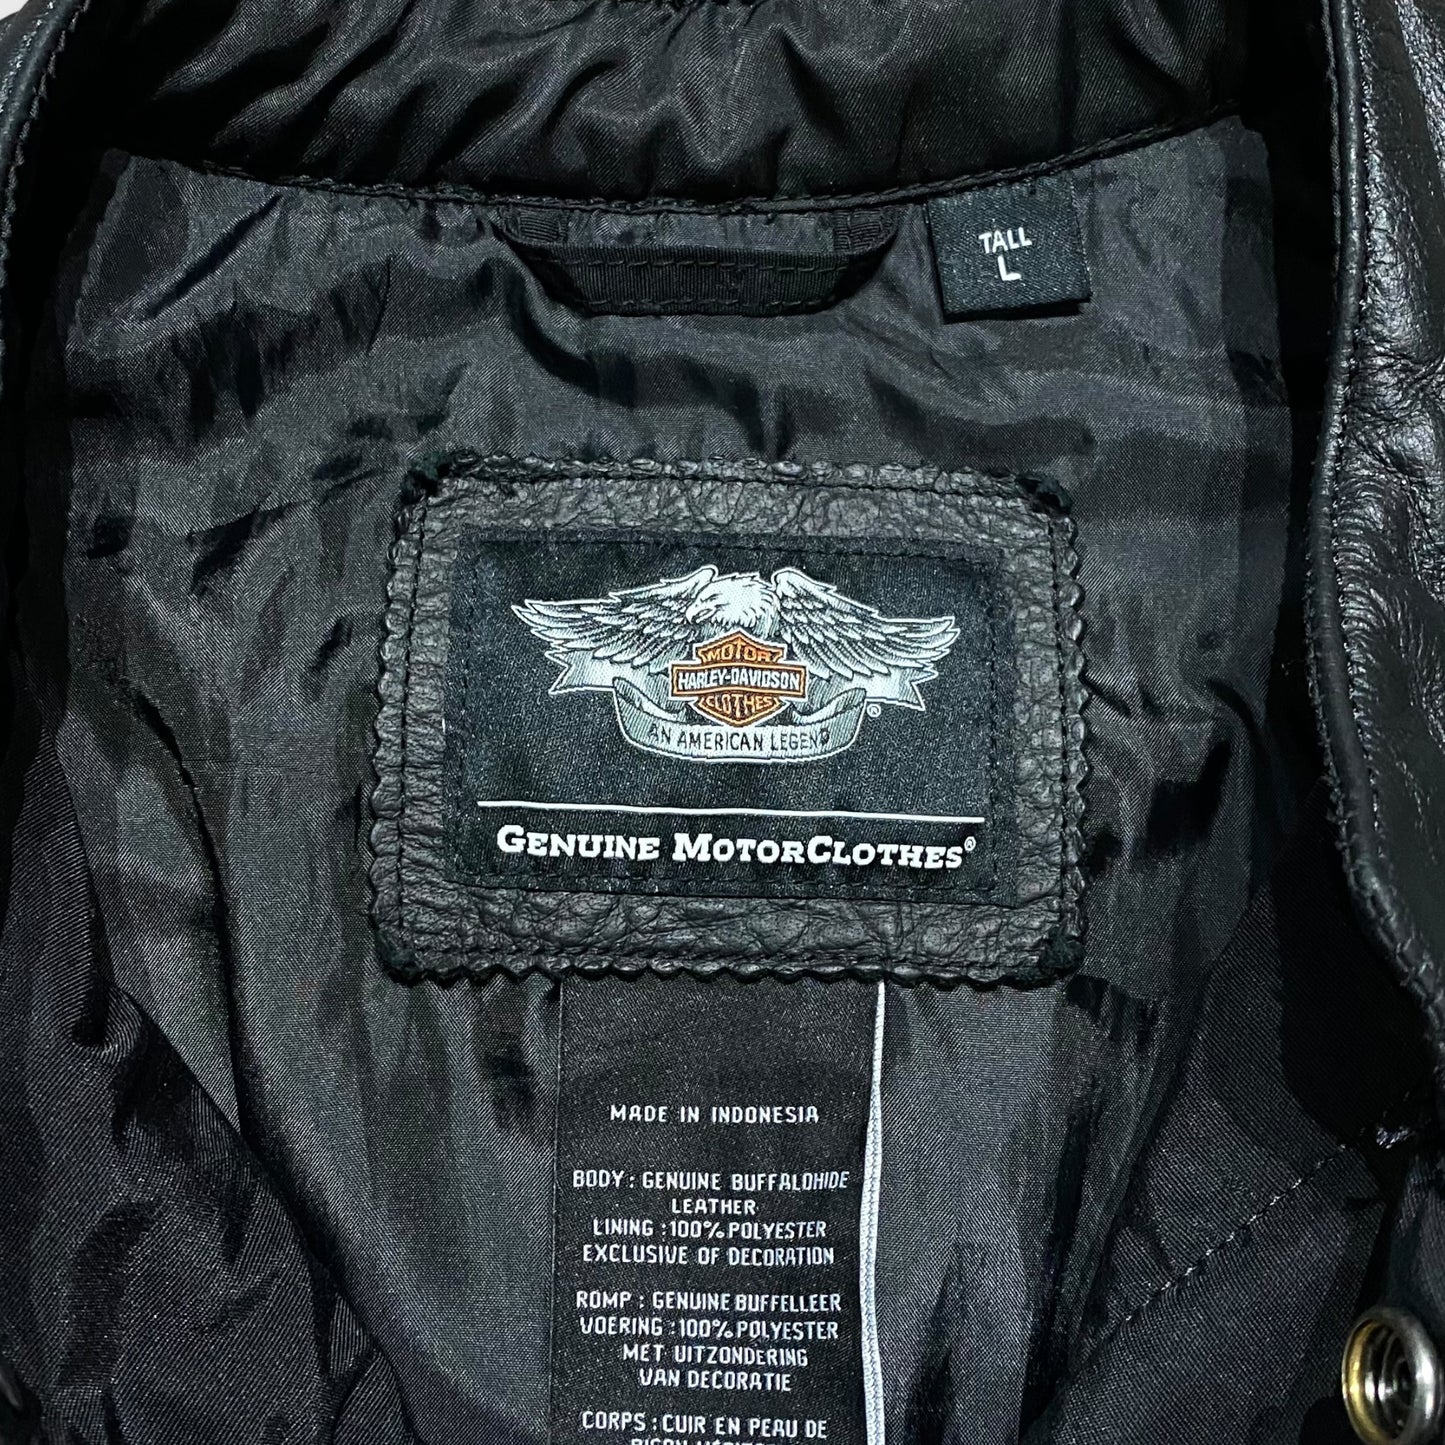 00's "Harley-Davidson" Lethear vest